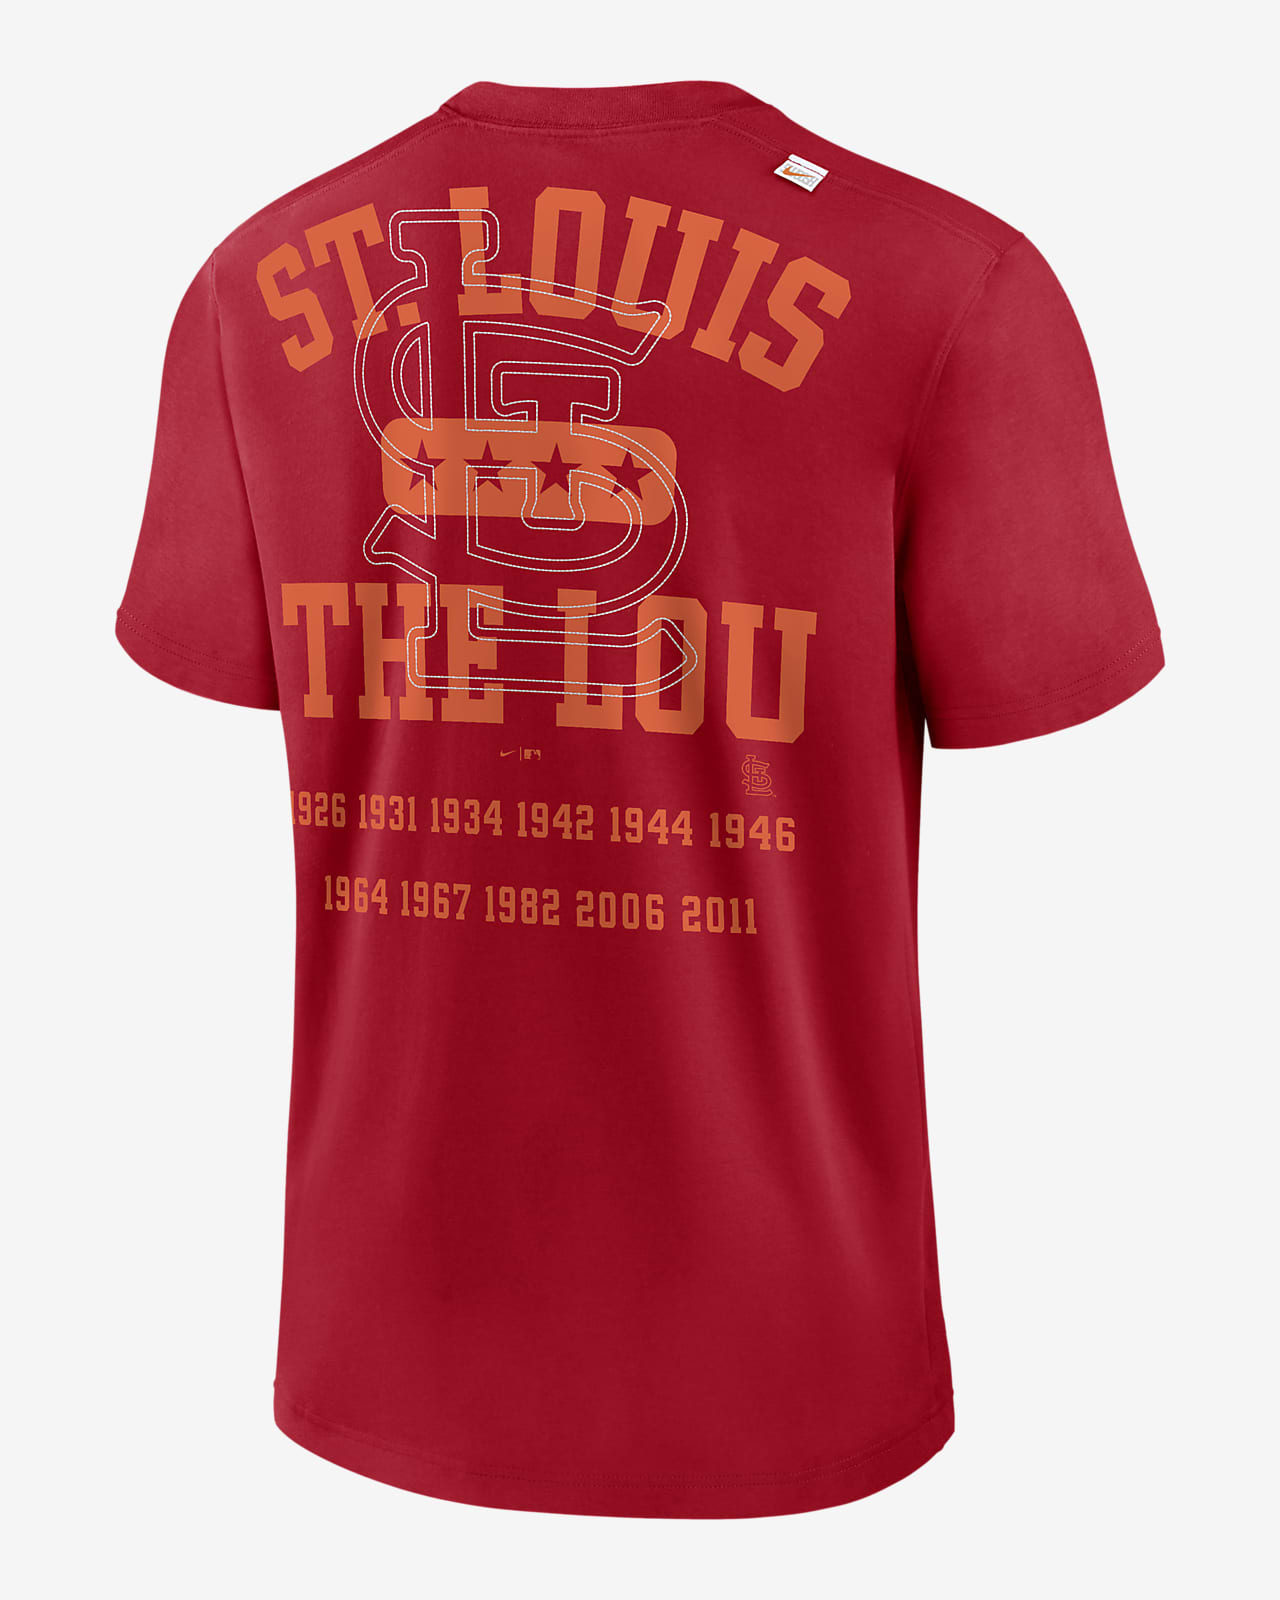 St. Louis Cardinals & Grumpy Cardinal T Shirts, Hoodies